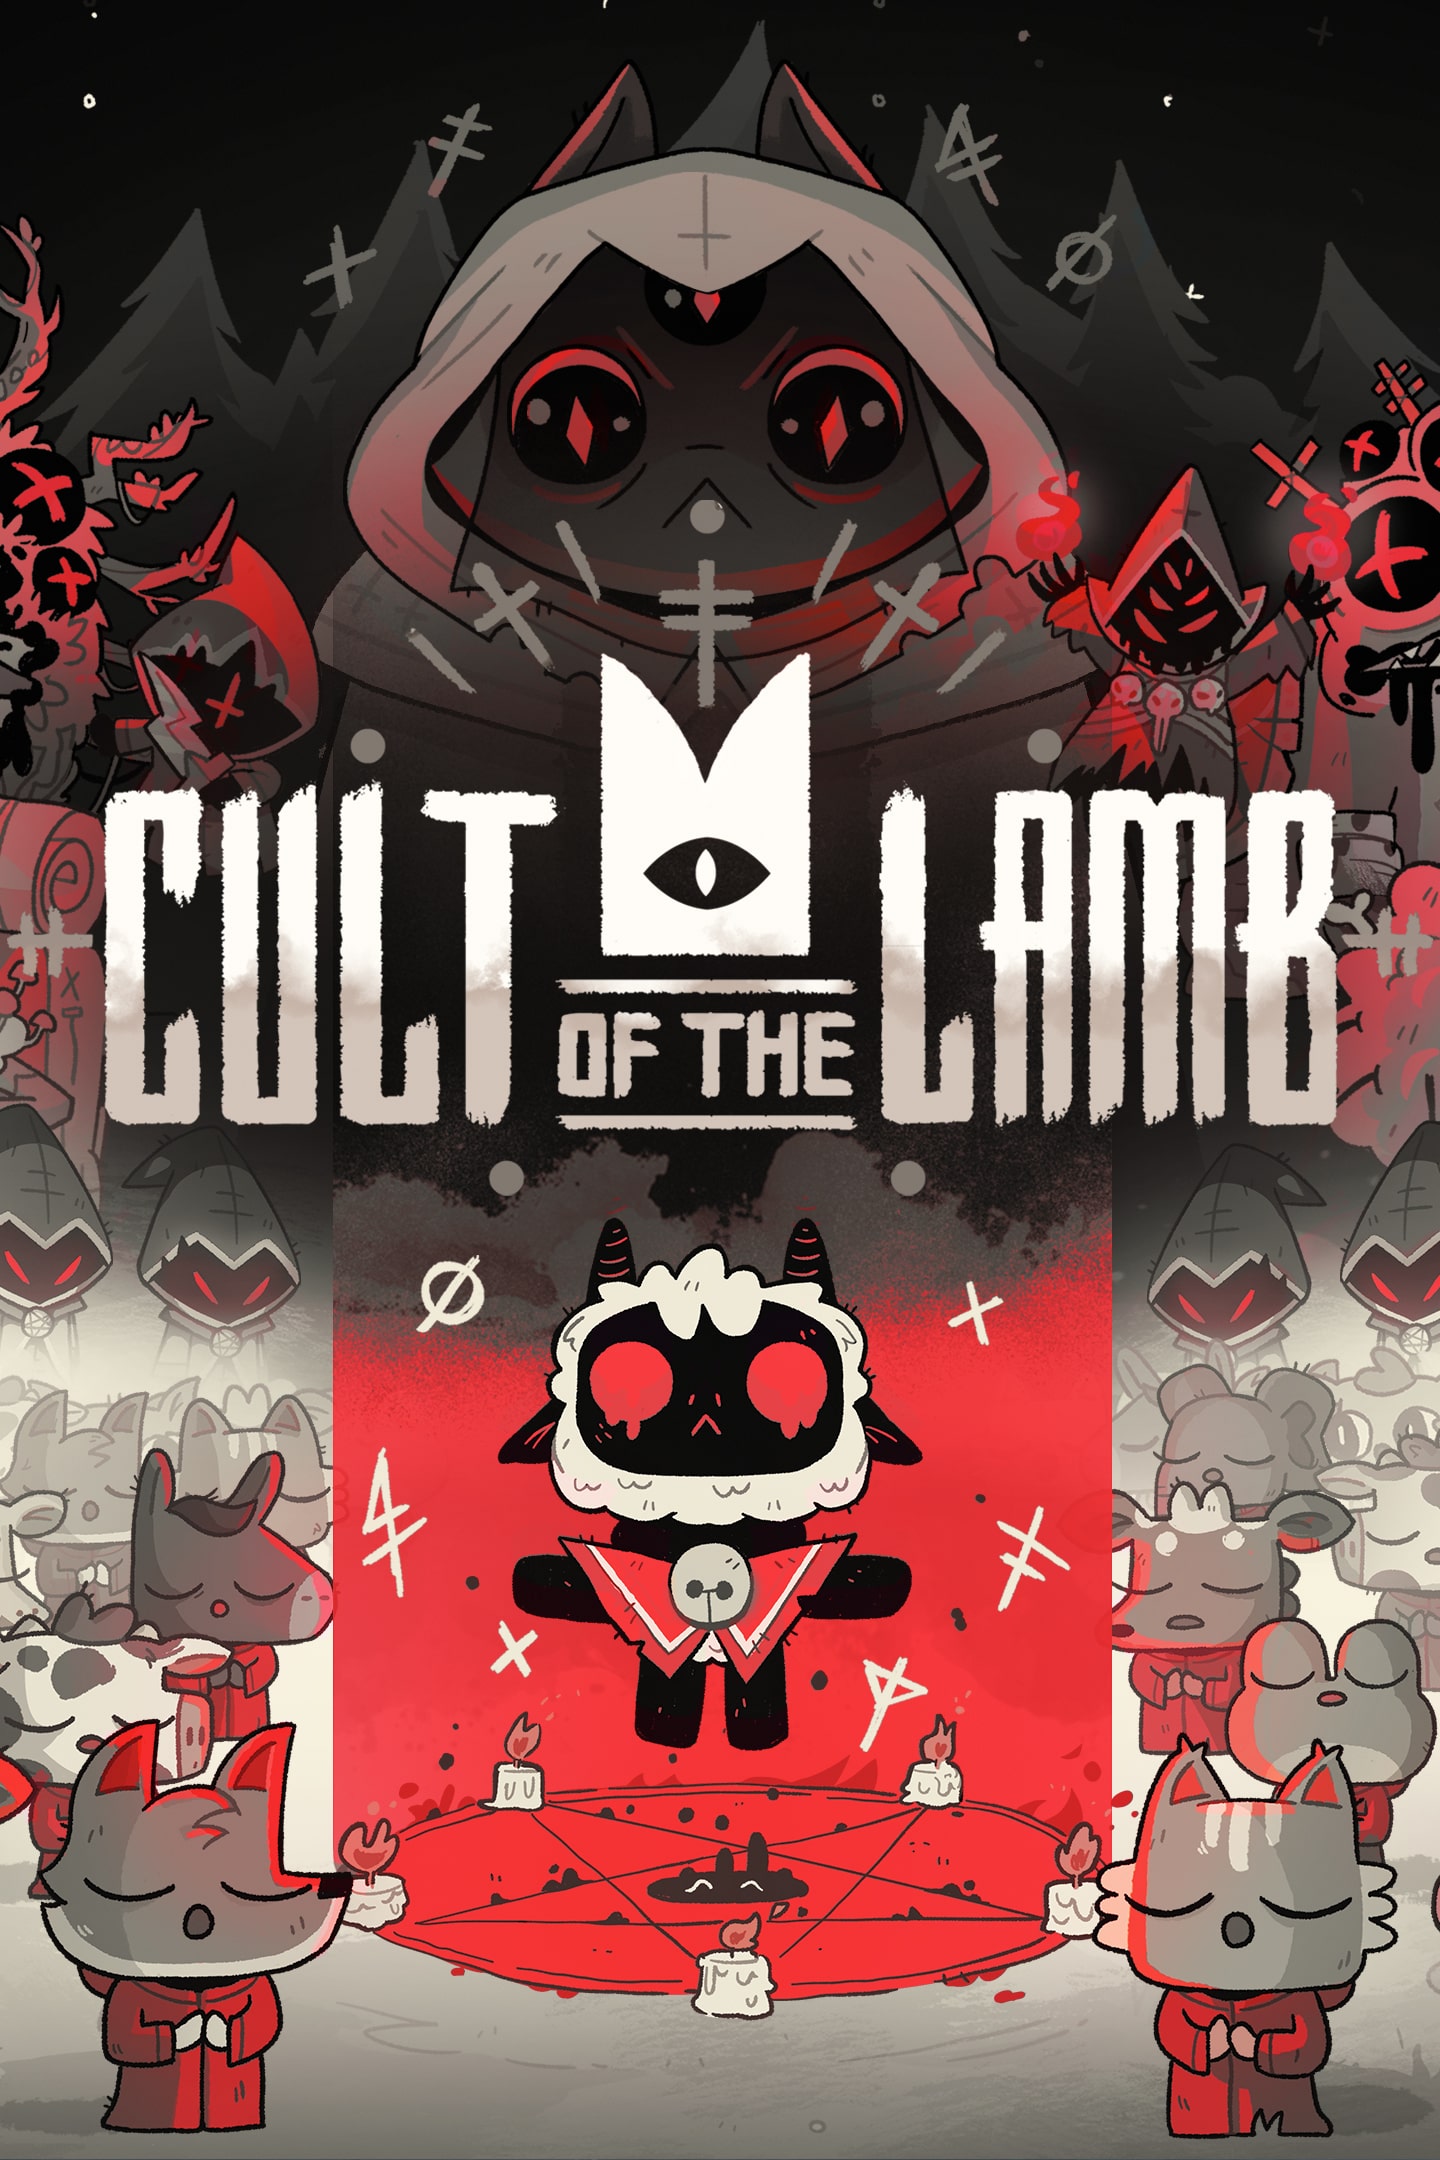 Comprar Cult of the Lamb Jogo para PC